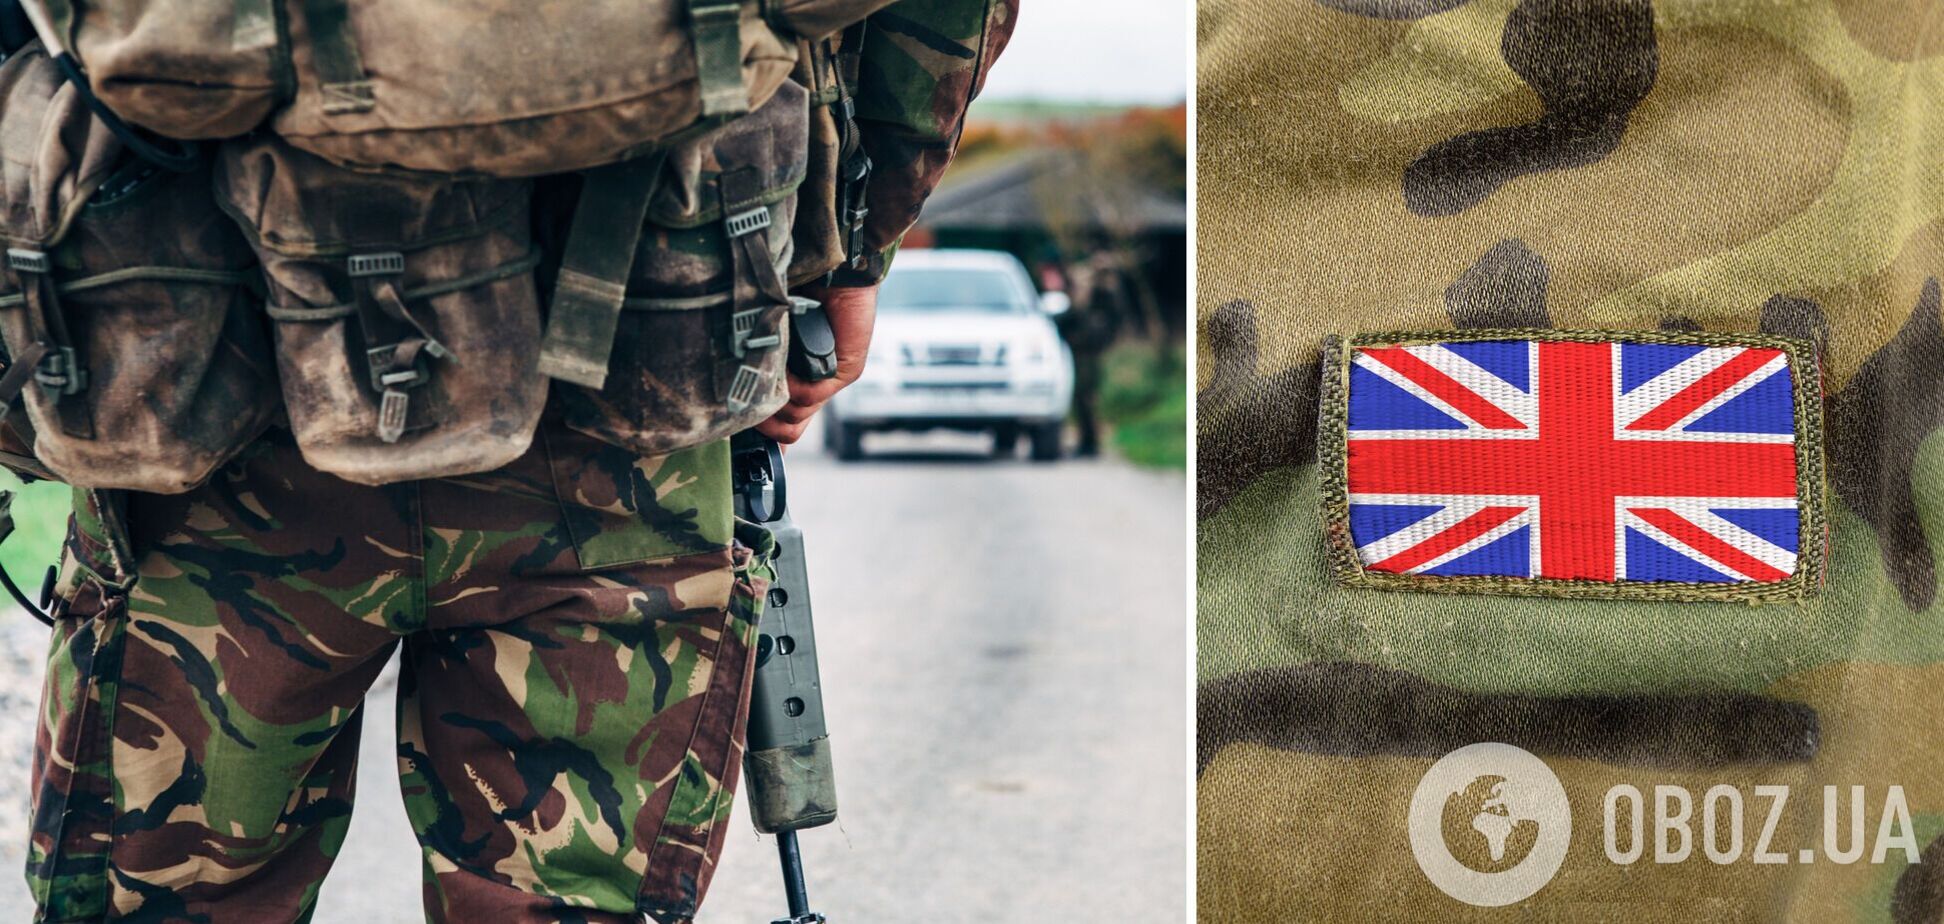 Британия отправила в Украину бойцов элитного спецназа на фоне угрозы агрессии РФ – СМИ